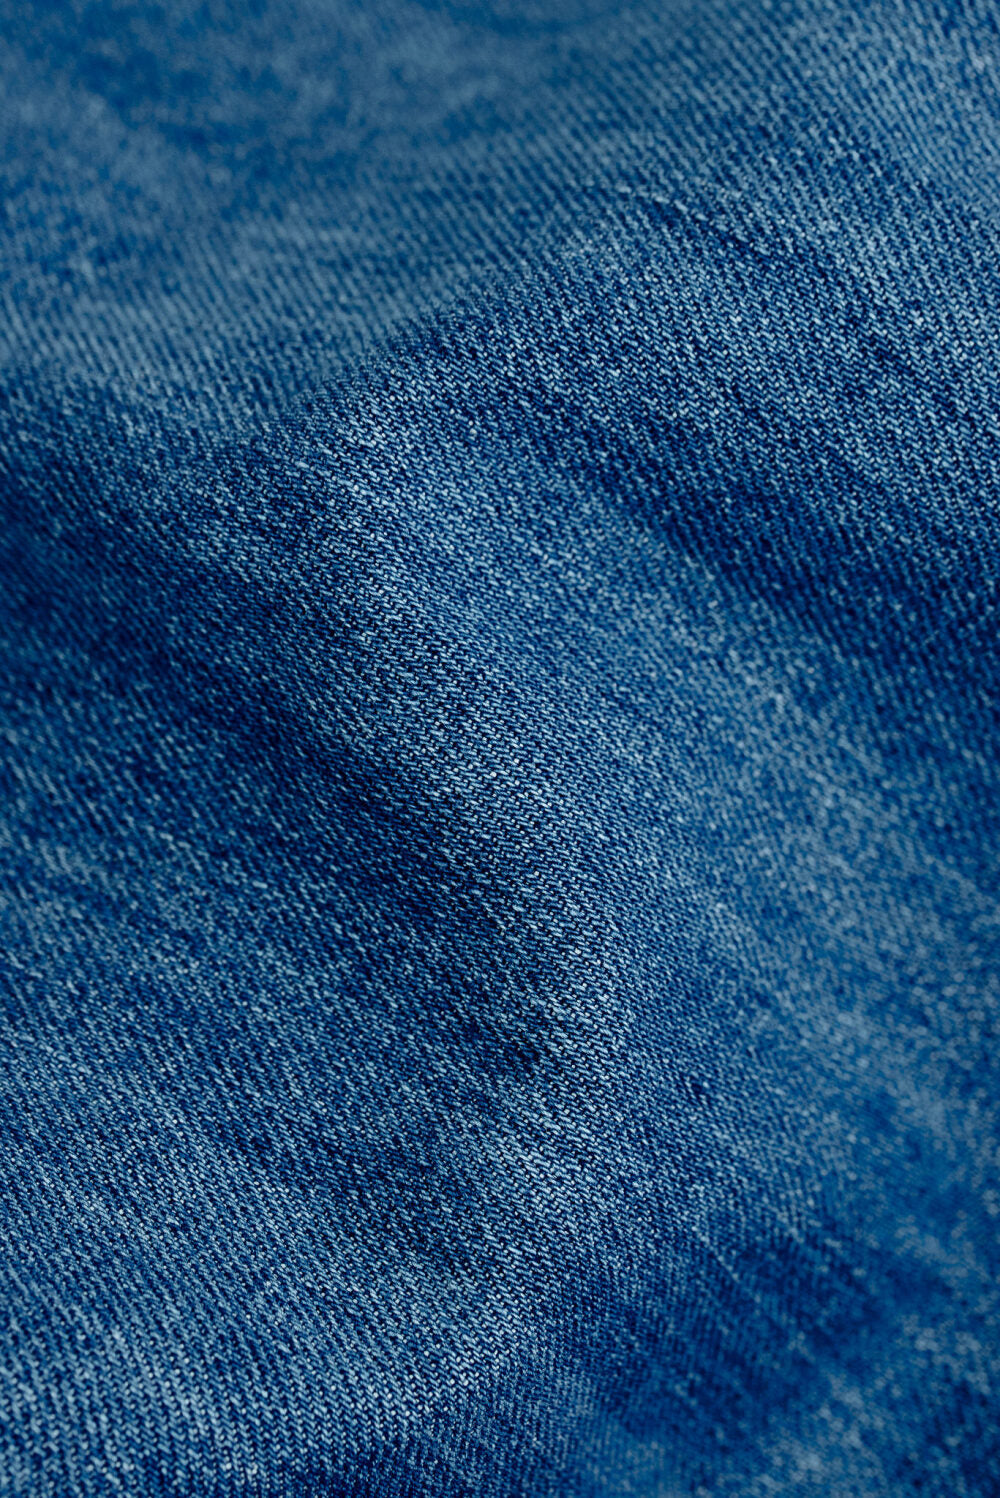 A Kind Of Guise - Terek Jeans (Vintage Blue Denim)